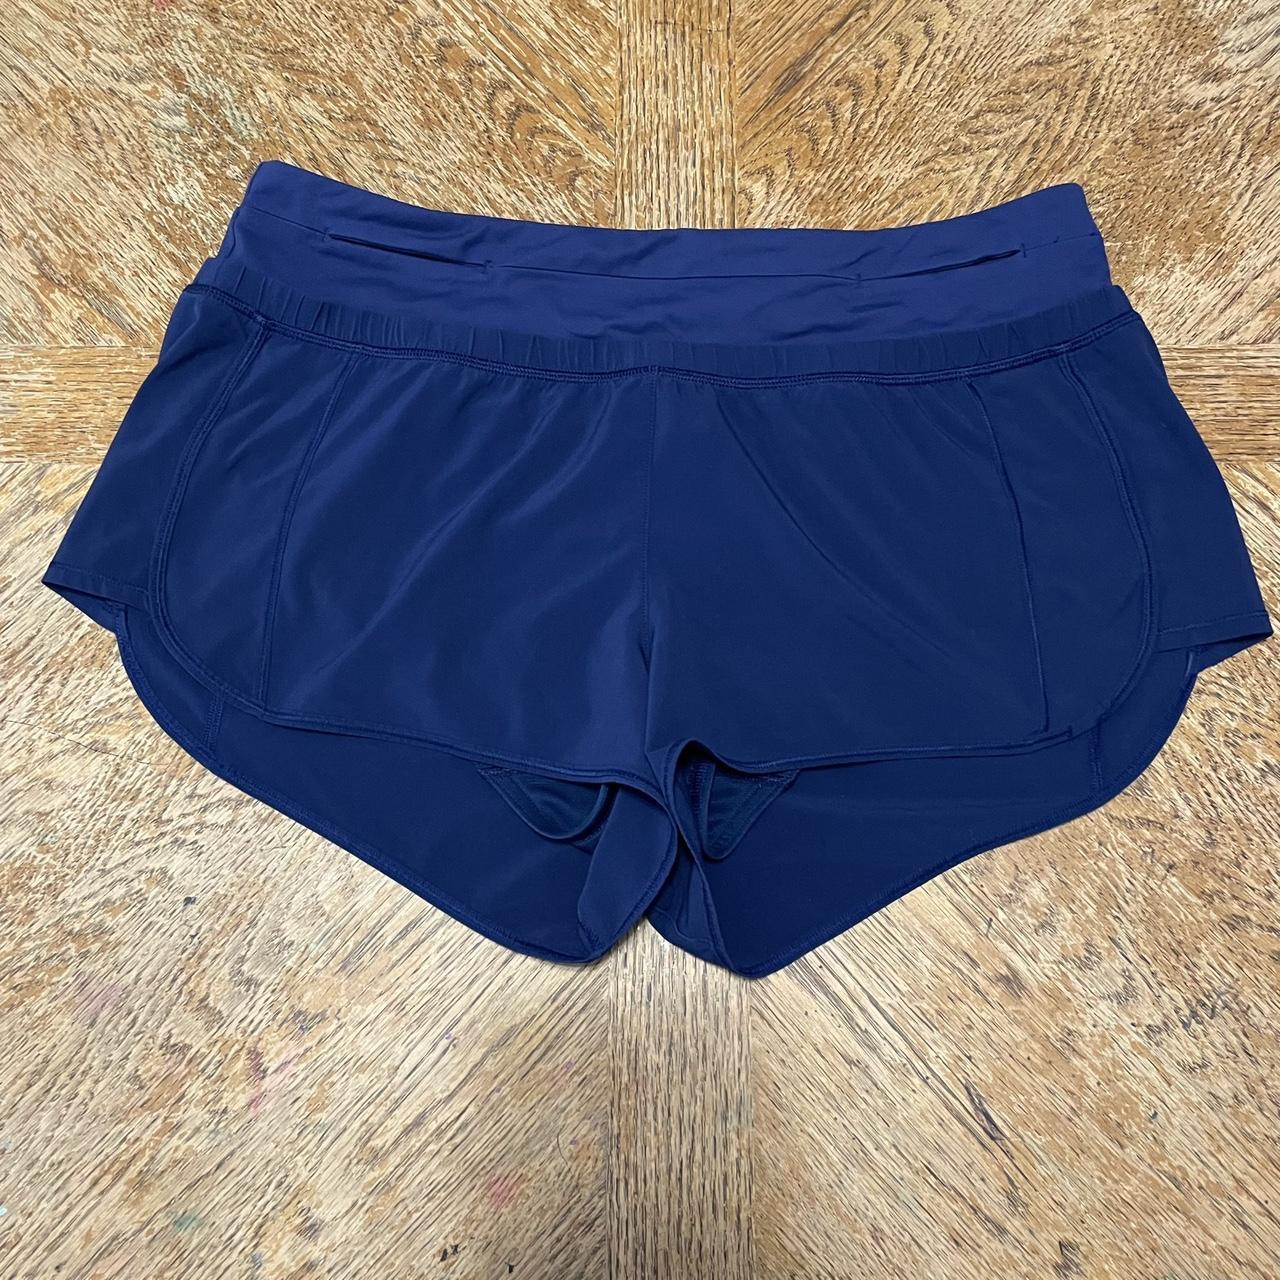 Lululemon Men's Logo Lined Blue Shorts Size Large. - Depop